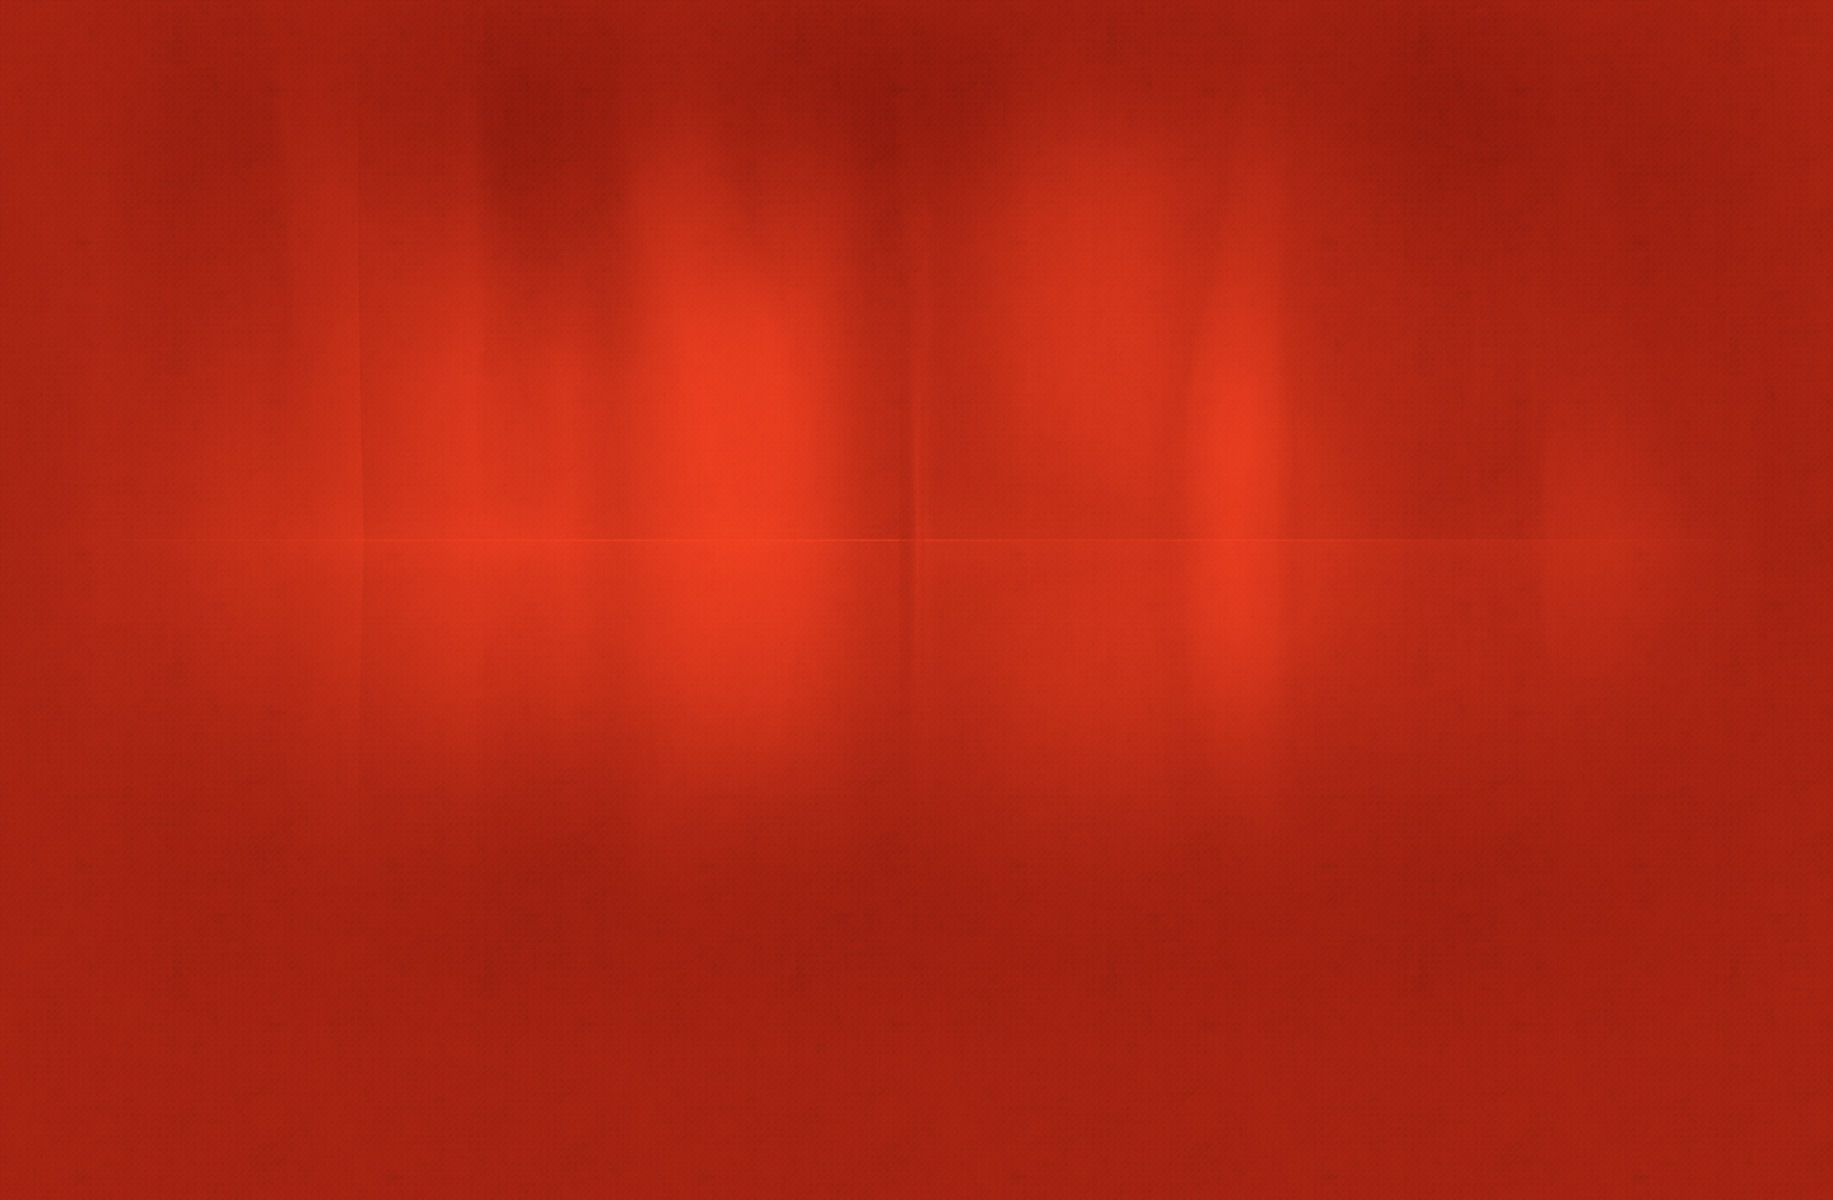 Red Metal Wallpaper: Với những gam màu đỏ tươi tắn và thiết kế sang trọng, hình ảnh bức tường thép màu đỏ chắc chắn sẽ làm bạn cảm thấy thích thú và hài lòng. Hãy nhấn vào đây để chiêm ngưỡng những hình ảnh tuyệt đẹp về bức tường này.